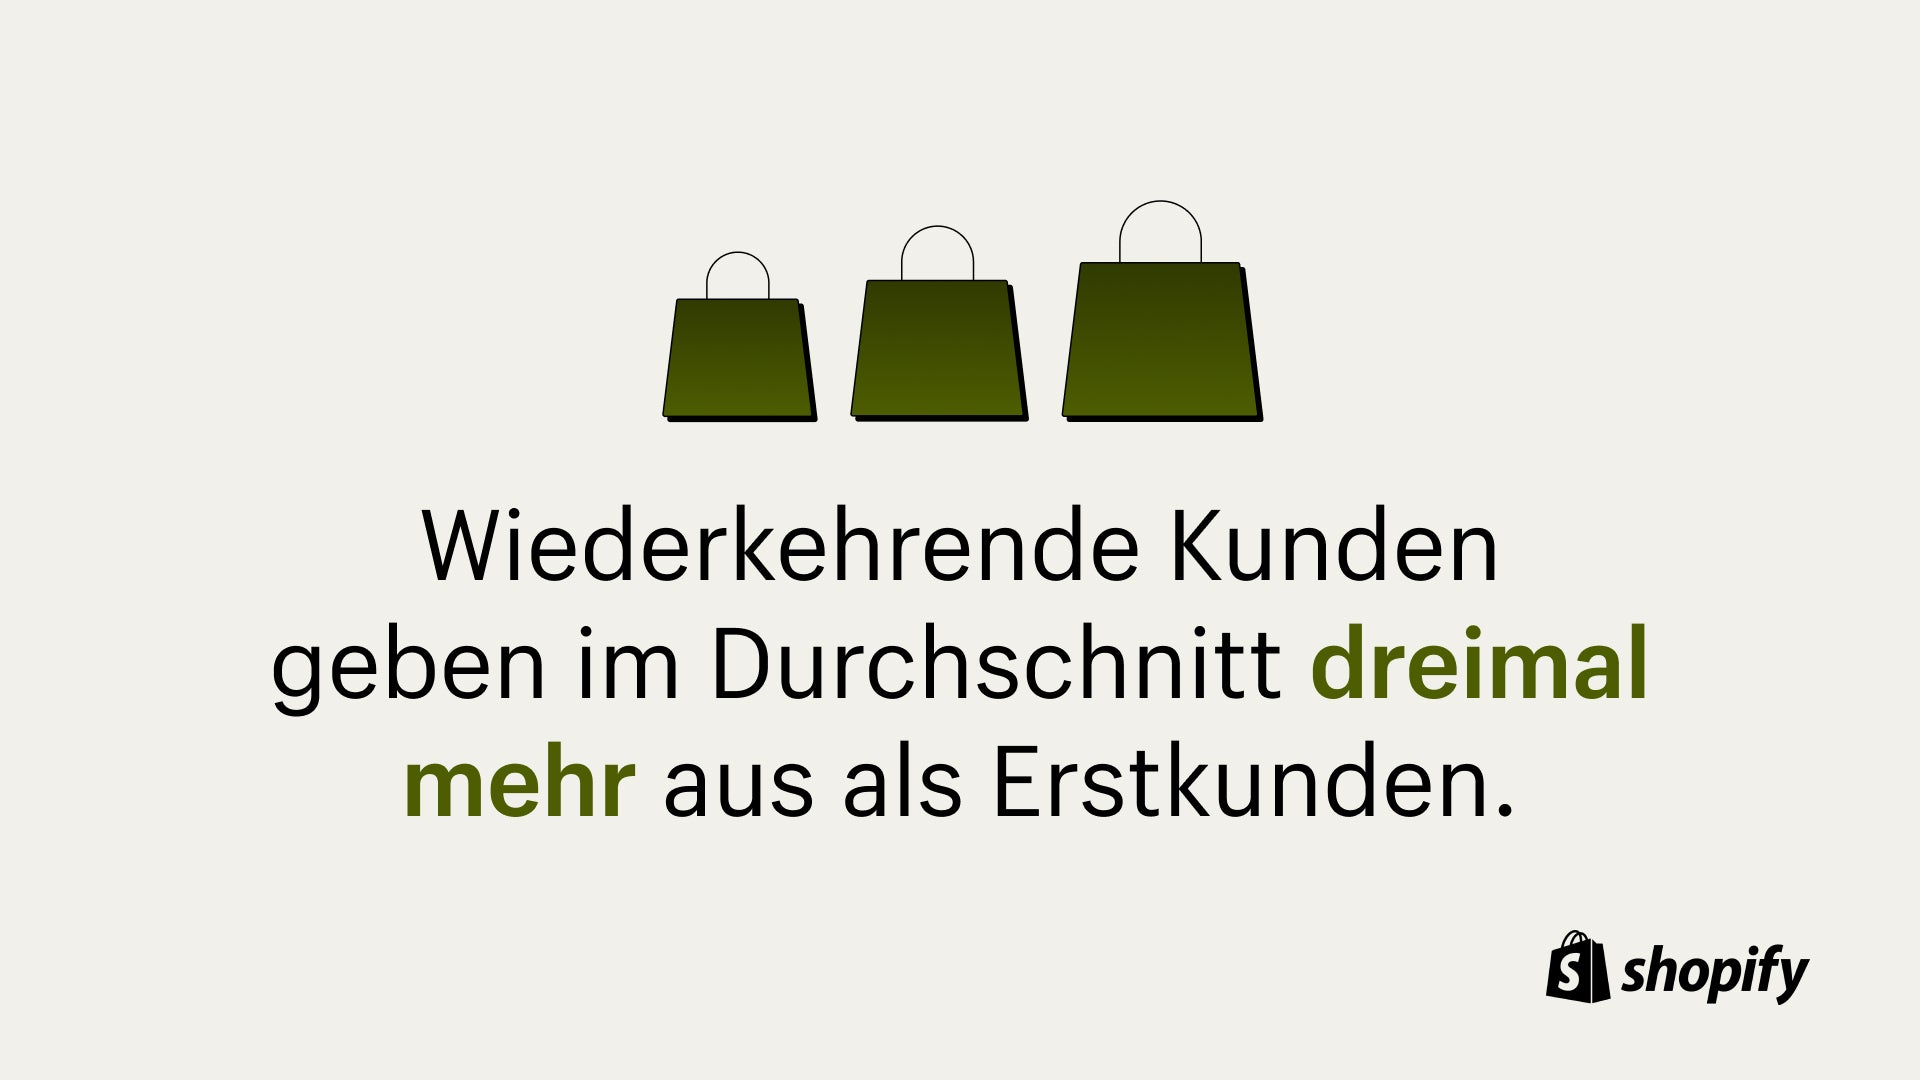 Cremefarbener Hintergrund mit drei grünen Einkaufstüten und einer Statistik unter den Einkaufstüten mit der Aufschrift „Stammkunden geben im Durchschnitt dreimal mehr aus als Erstkunden.“